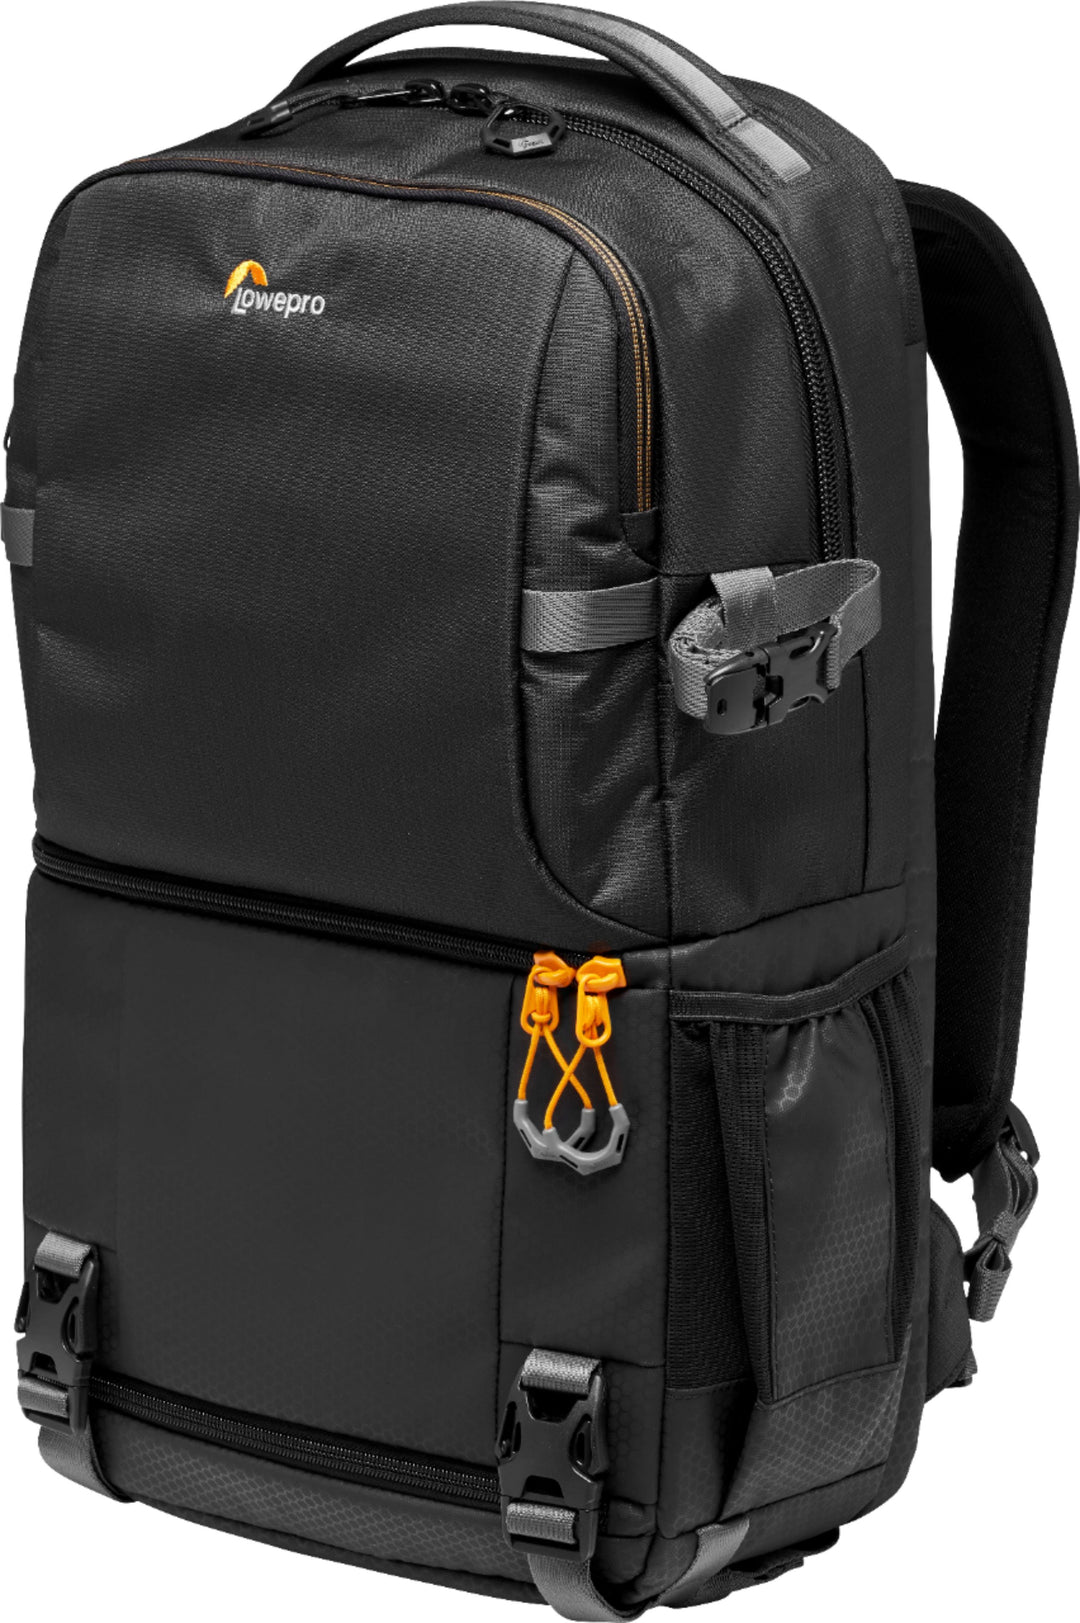 Lowepro - Fastpack Camera Backpack - Black_1